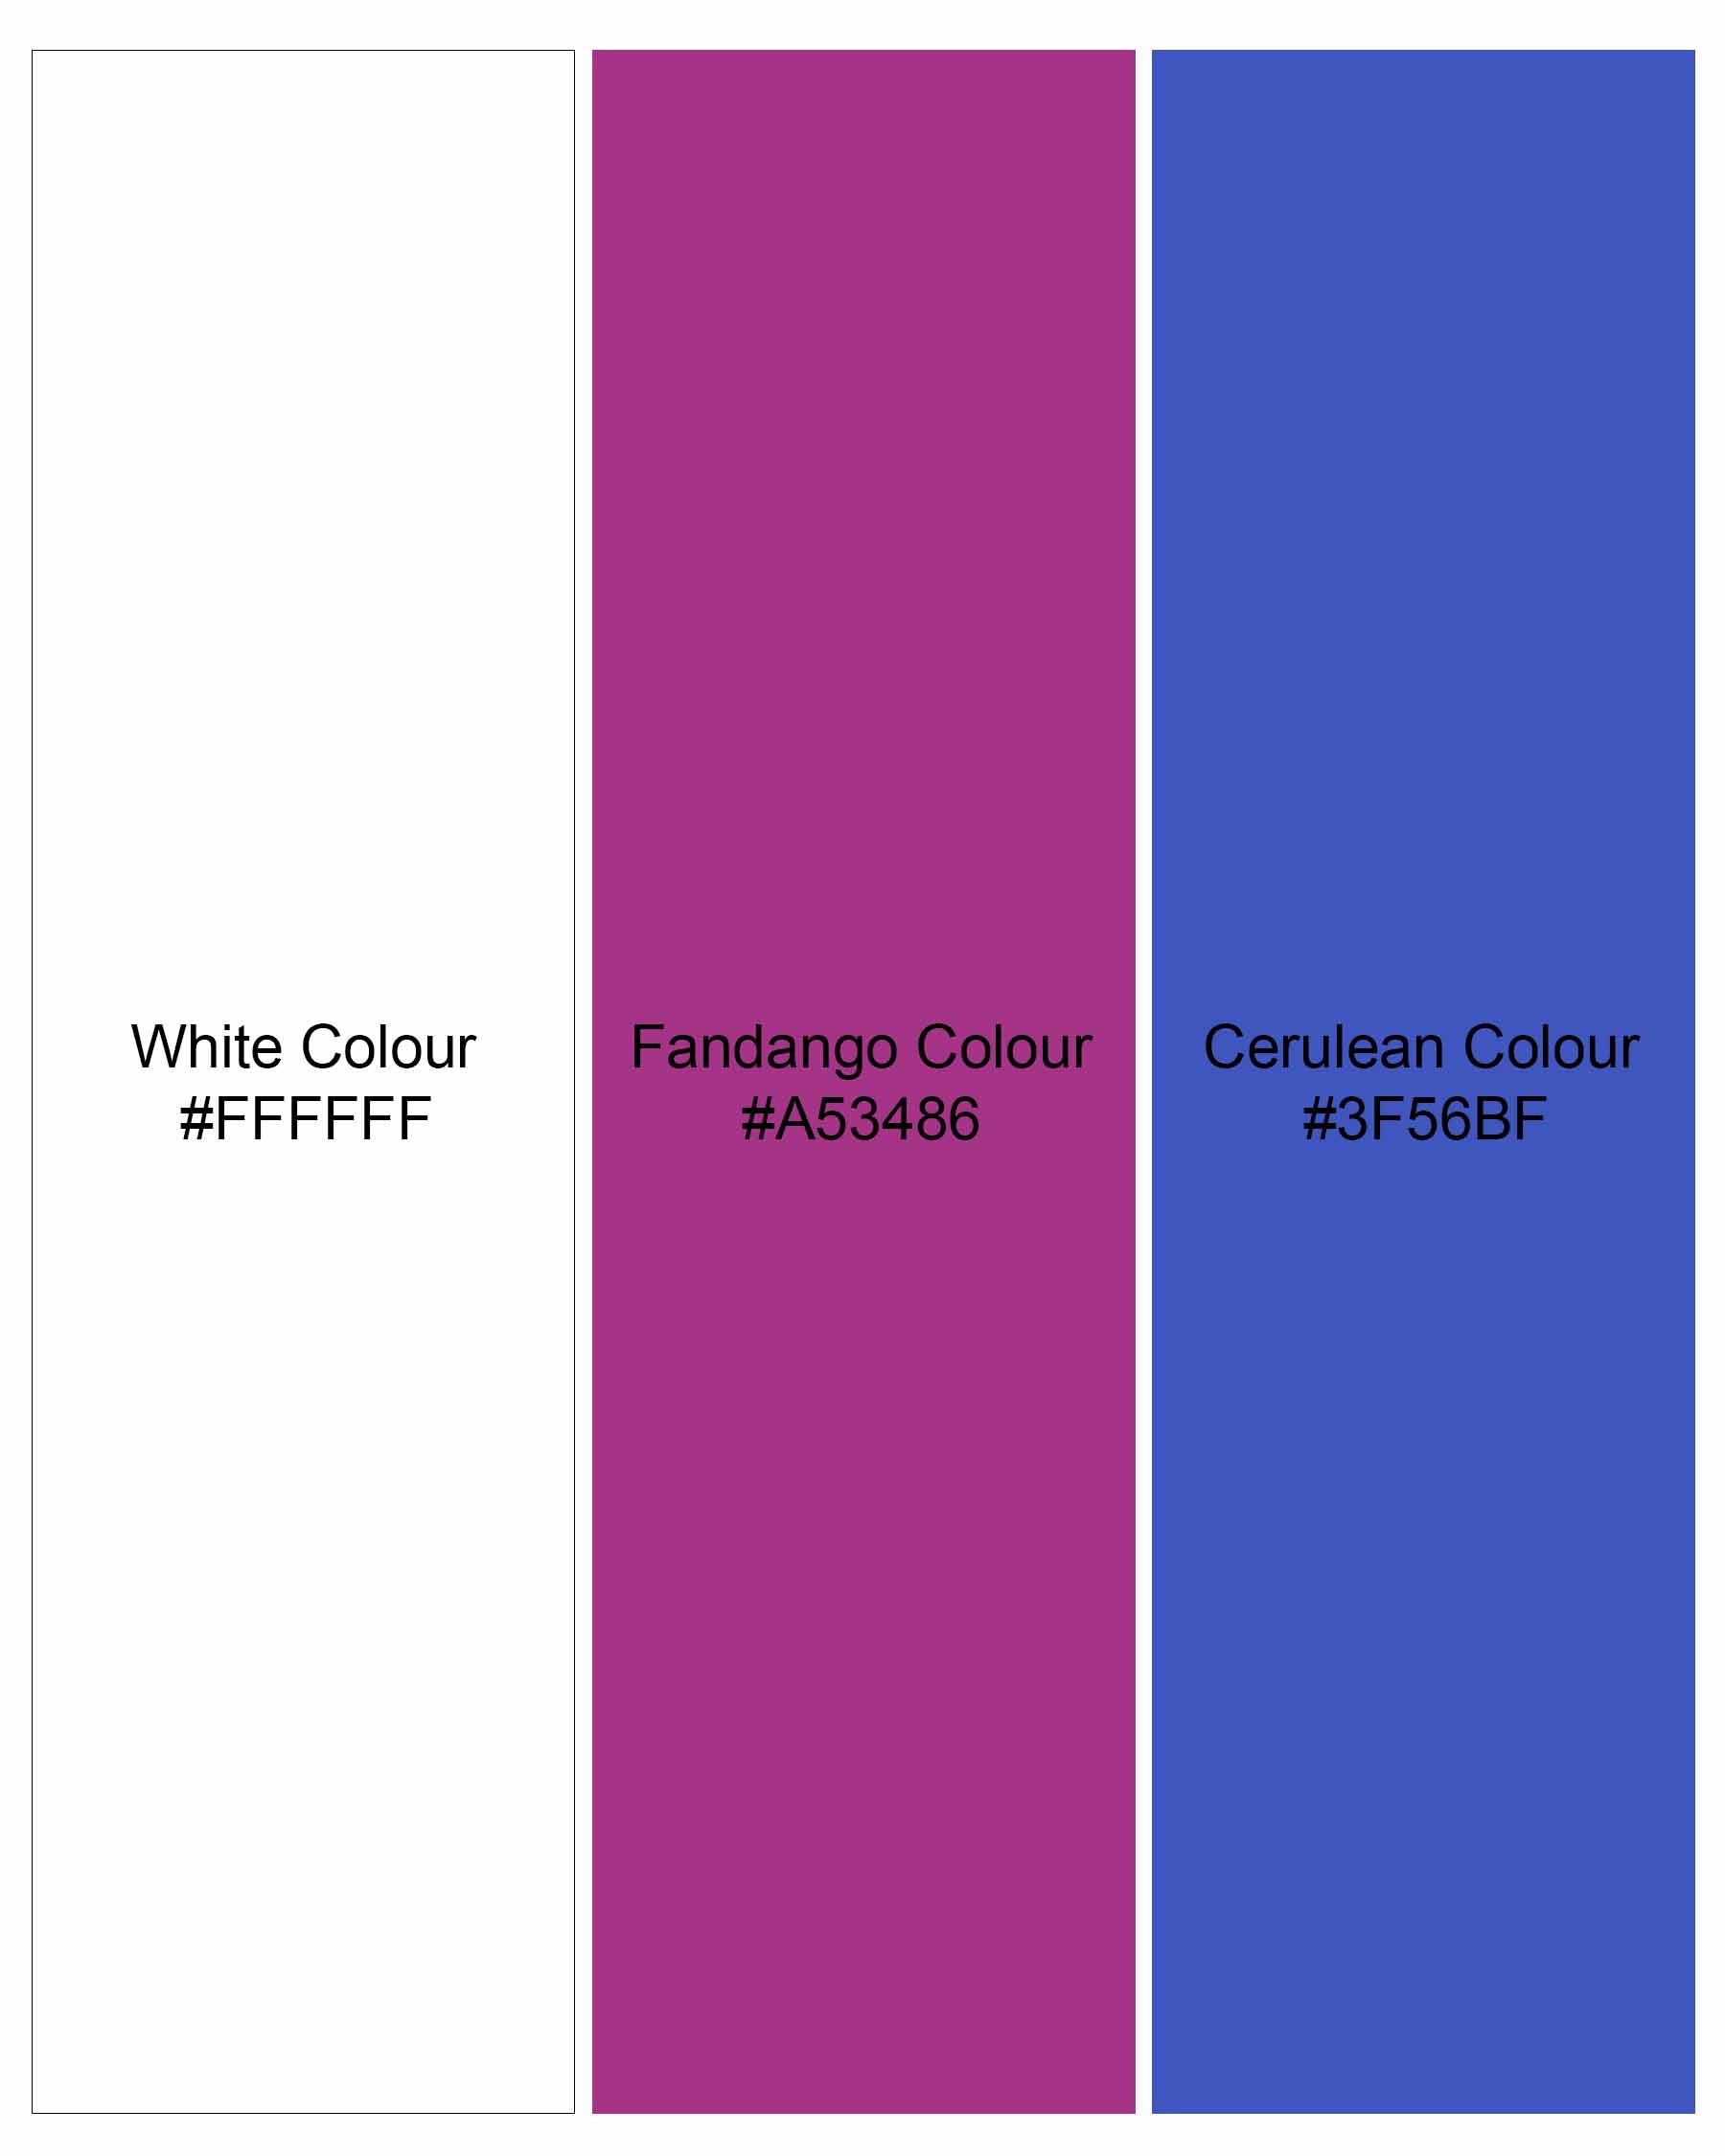 Fandango Purple and Cerulean Blue Plaid Premium Cotton Shirt  8025-M-38,8025-M-H-38,8025-M-39,8025-M-H-39,8025-M-40,8025-M-H-40,8025-M-42,8025-M-H-42,8025-M-44,8025-M-H-44,8025-M-46,8025-M-H-46,8025-M-48,8025-M-H-48,8025-M-50,8025-M-H-50,8025-M-52,8025-M-H-52